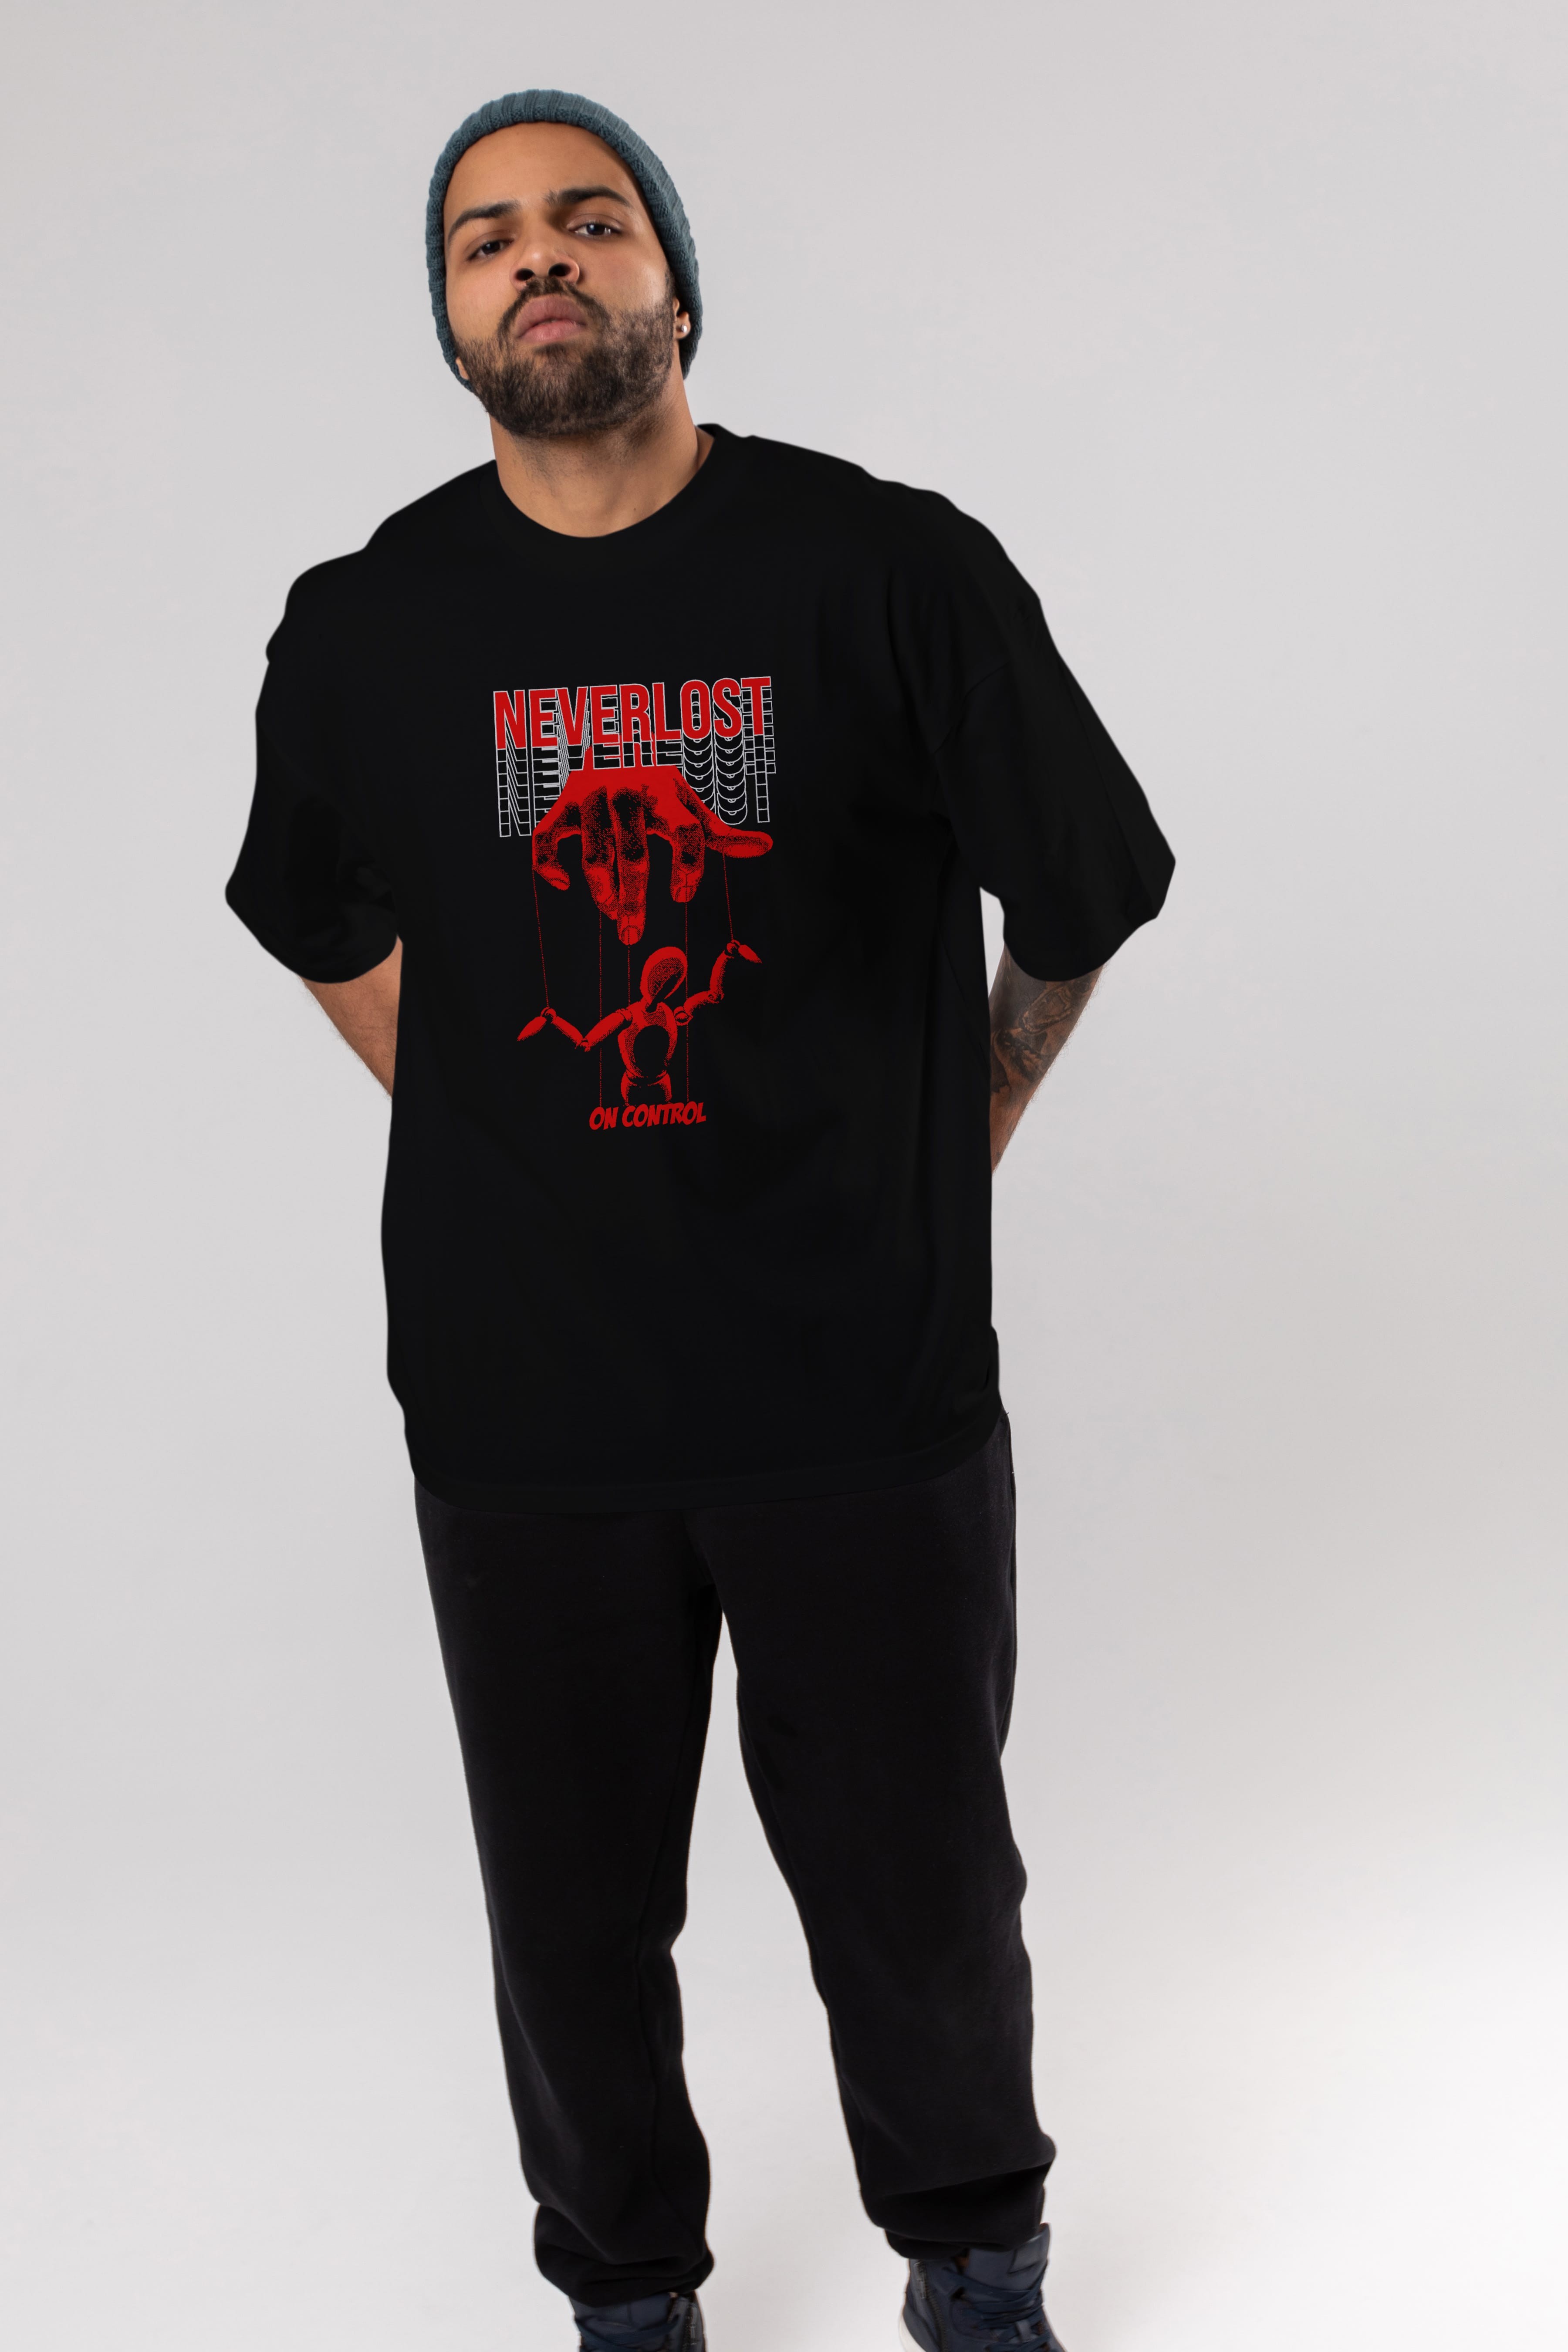 Neverlost on Control Ön Baskılı Oversize t-shirt Erkek Kadın Unisex